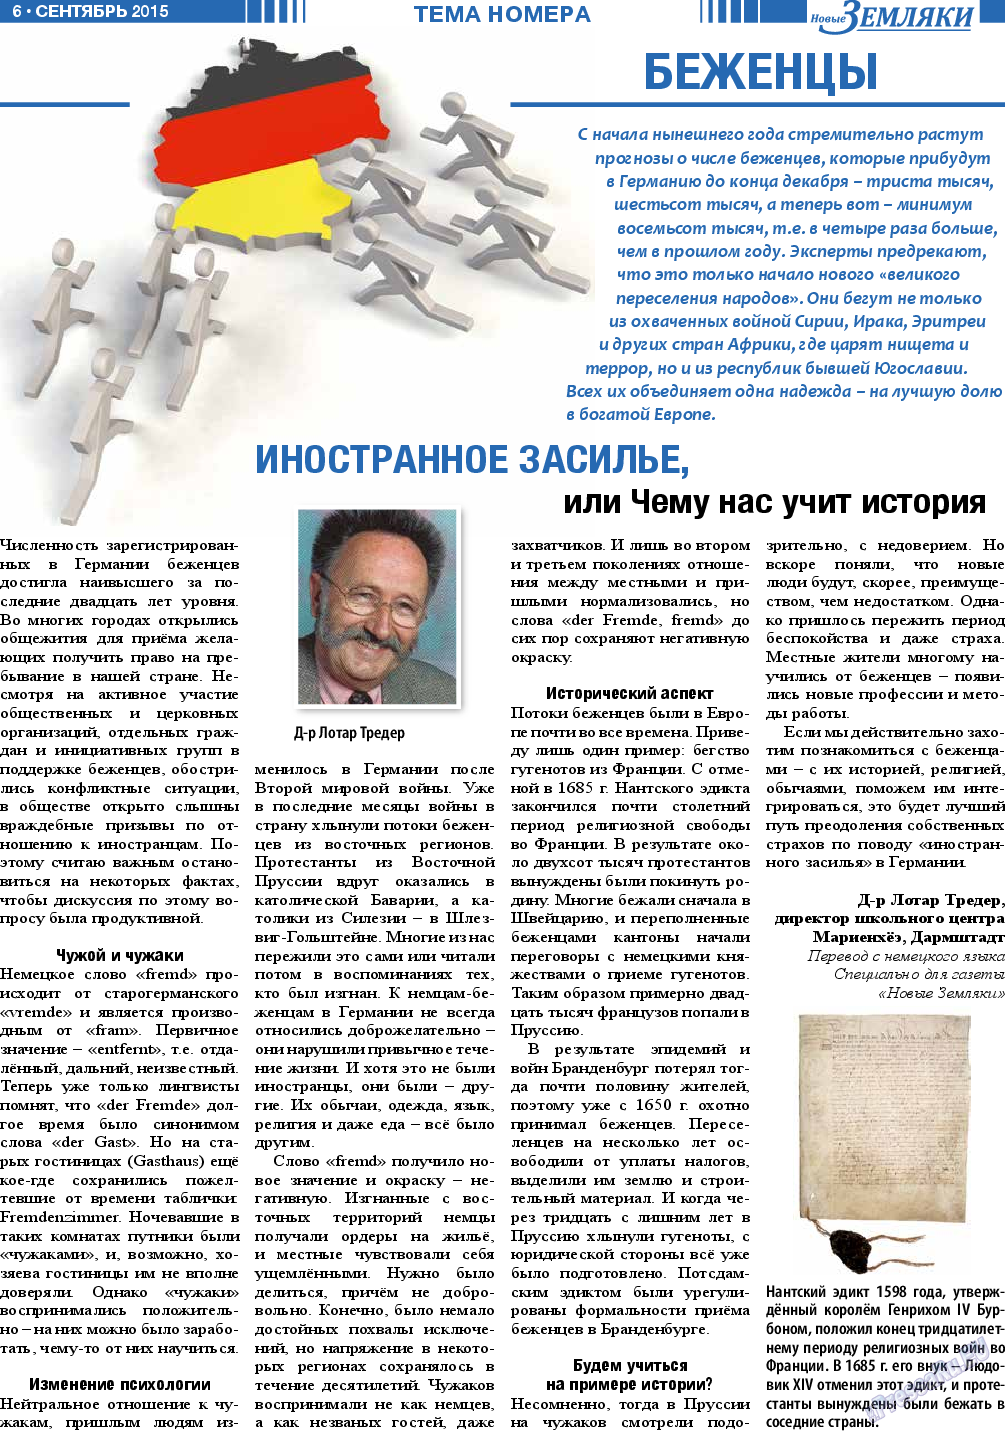 Новые Земляки (газета). 2015 год, номер 9, стр. 6